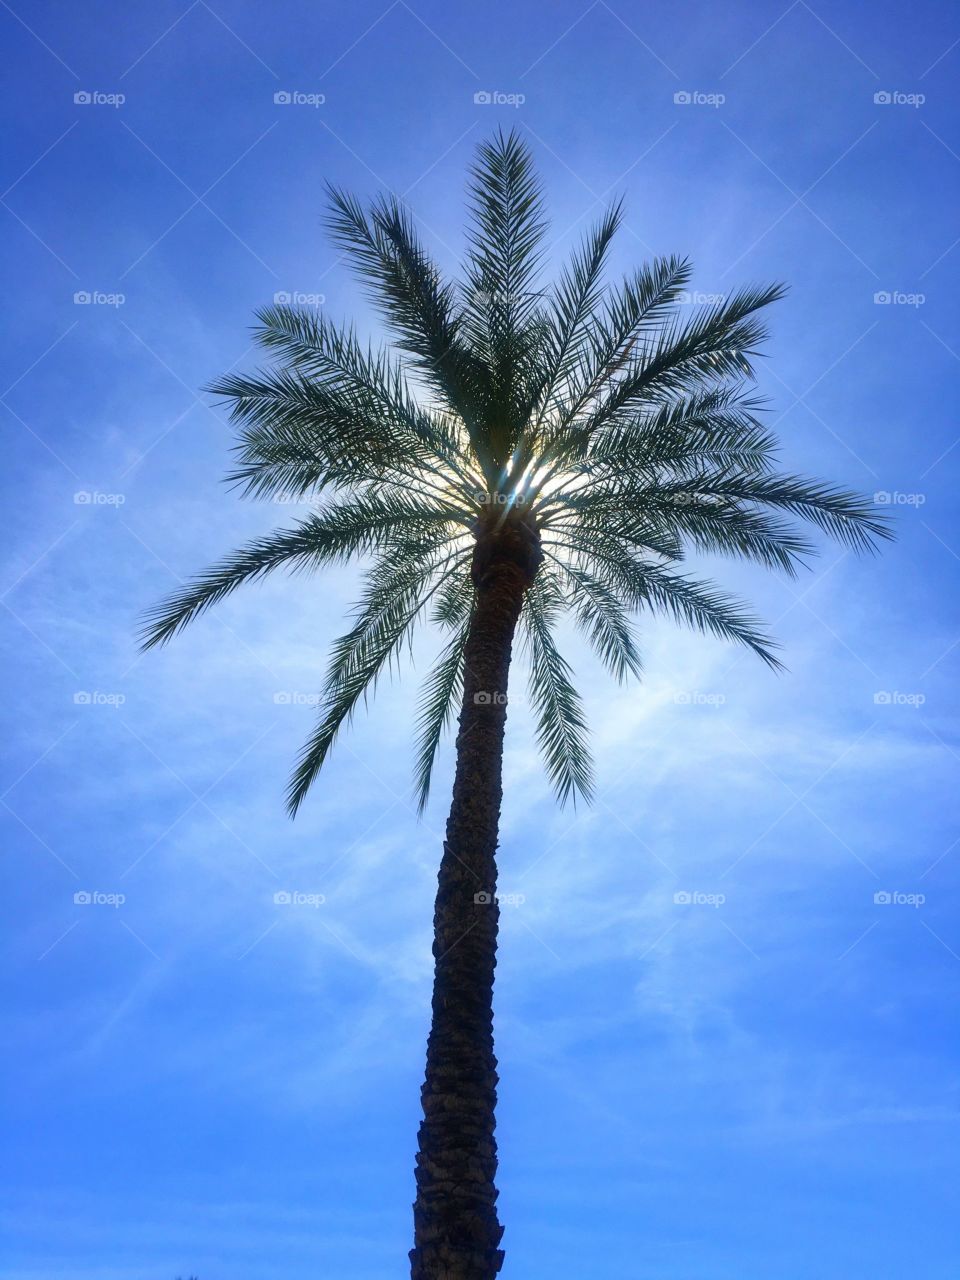 Arizona Palm Tree in the Sun